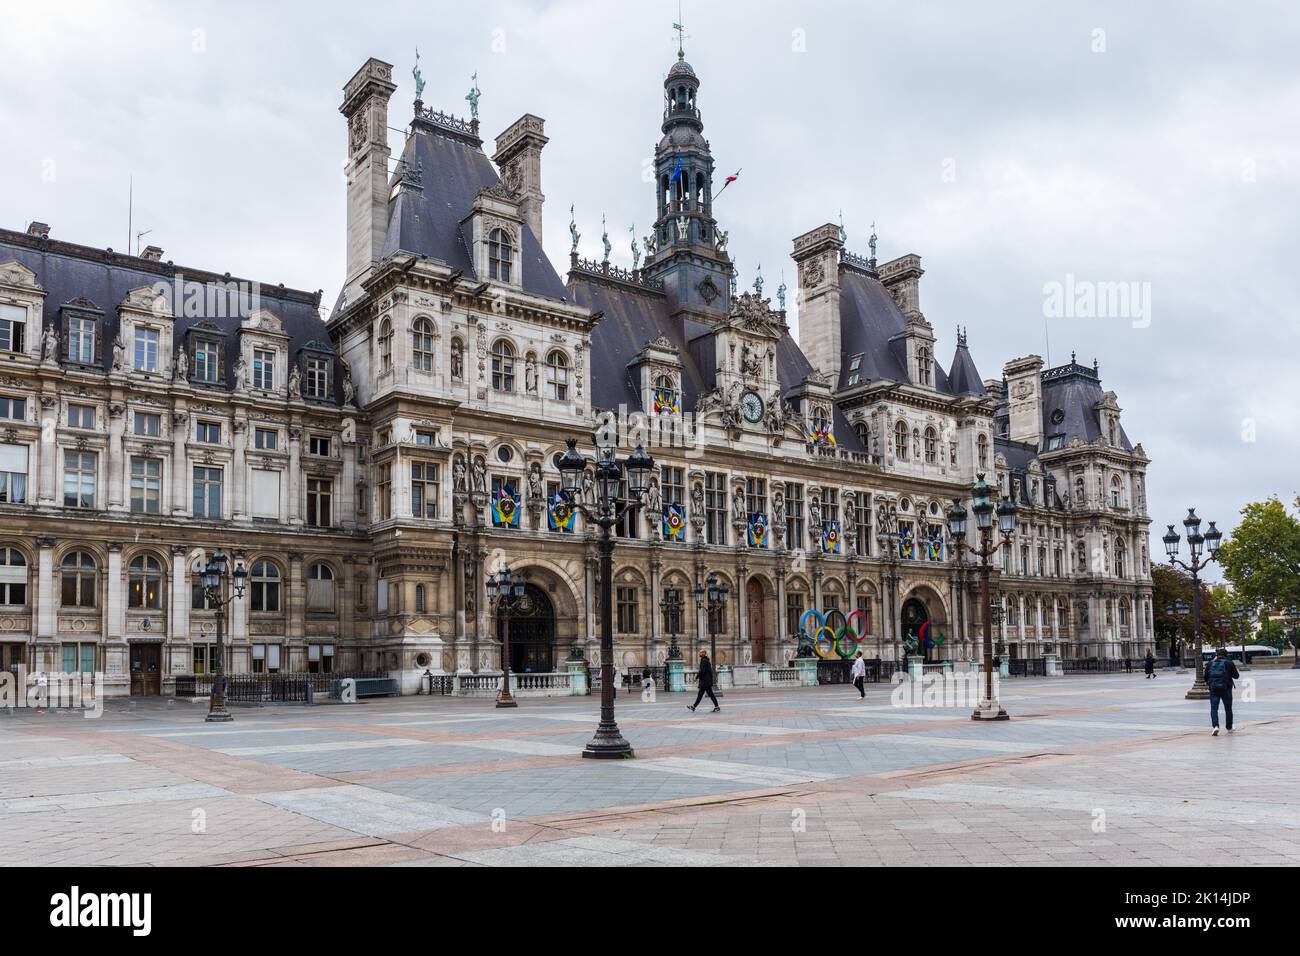 L'Hôtel de ville avec les anneaux olympiques pour les Jeux Olympiques de Paris 2024, Paris, France, Europe Banque D'Images